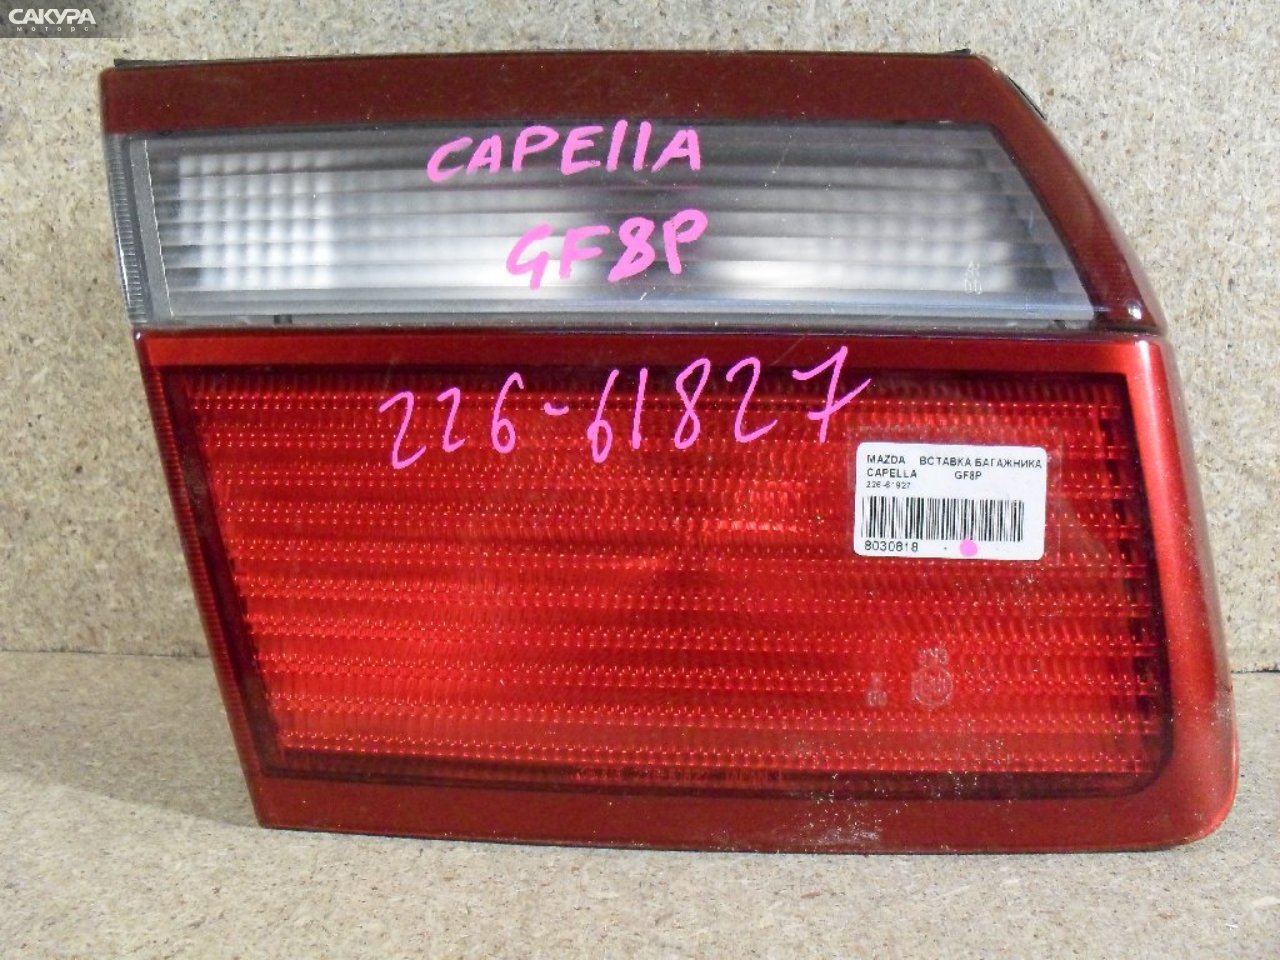 Фонарь вставка багажника левый Mazda Capella GF8P 226-61827: купить в Сакура Абакан.